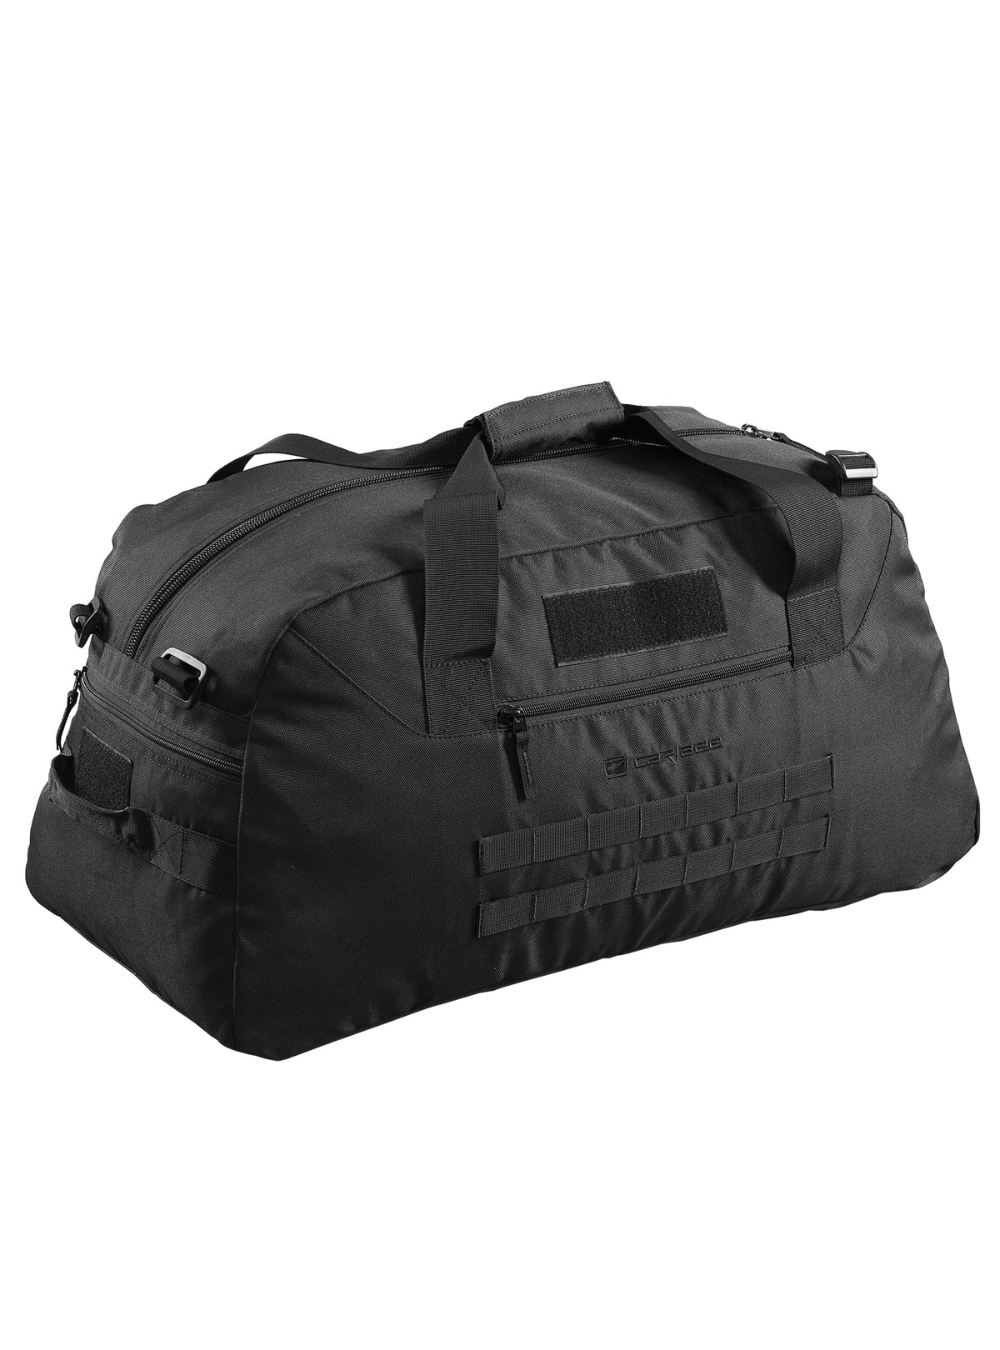 Caribee OP's Duffle 65L Gear Bag